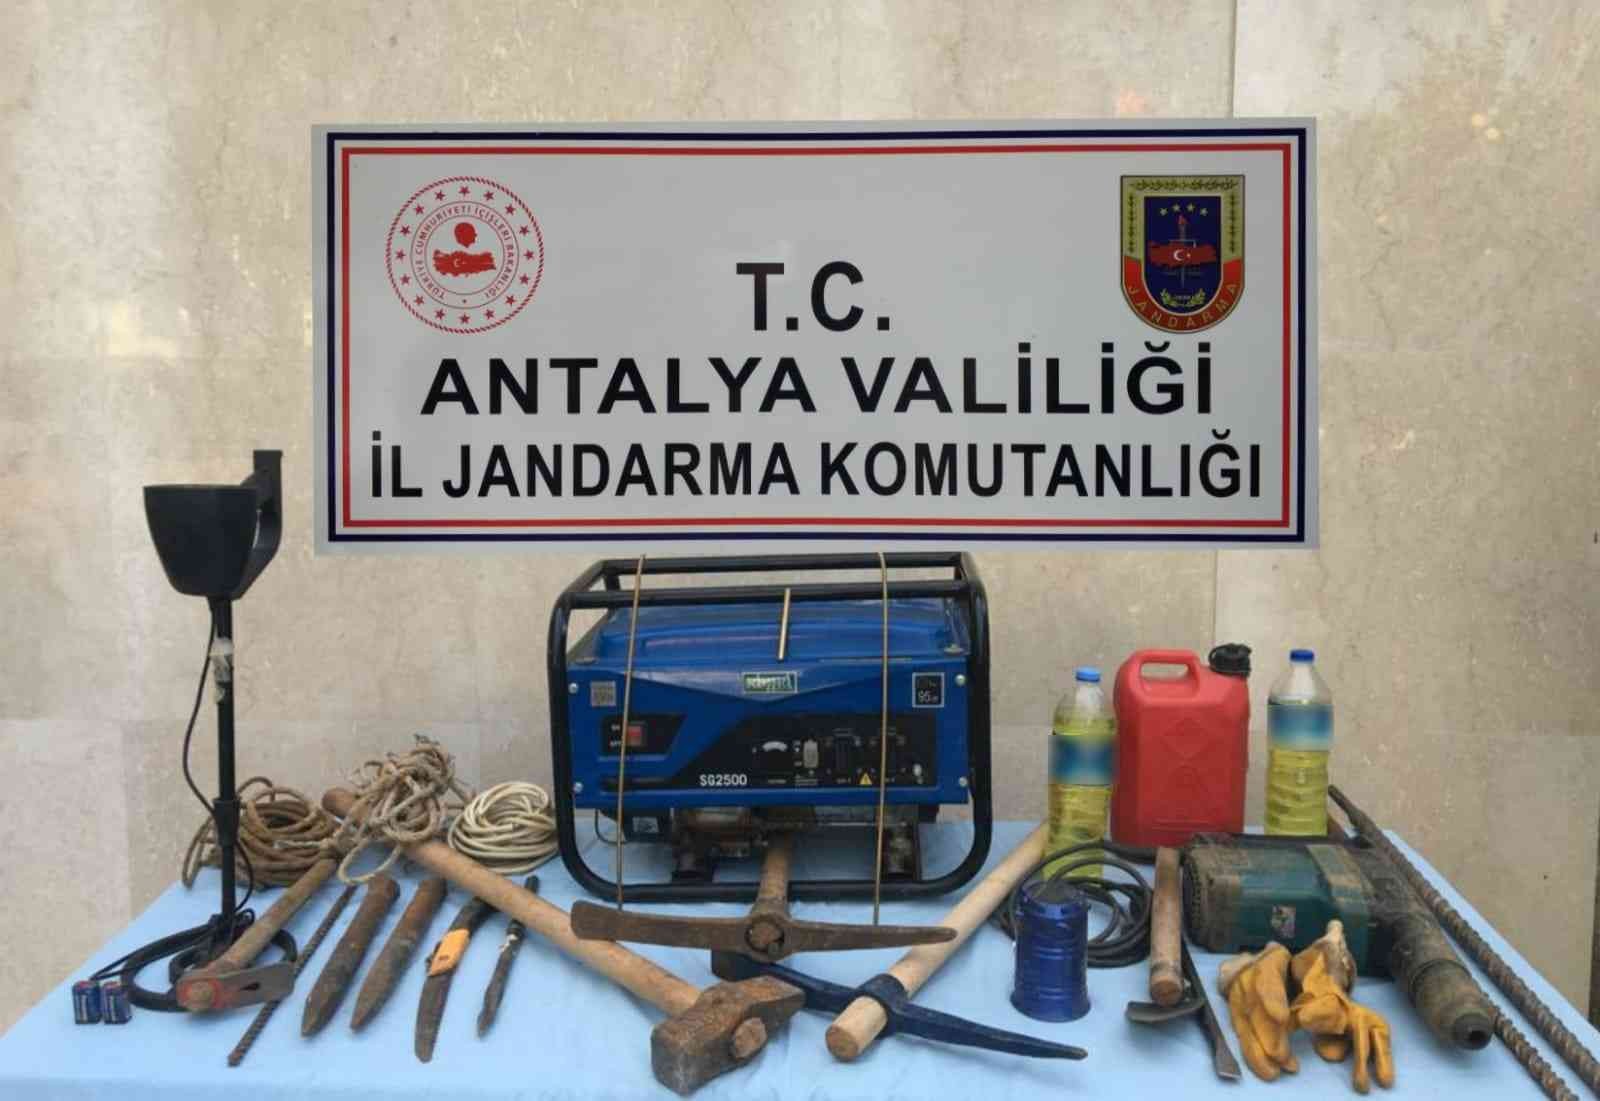 Antalya’da kaçak kazıya 3 gözaltı #antalya